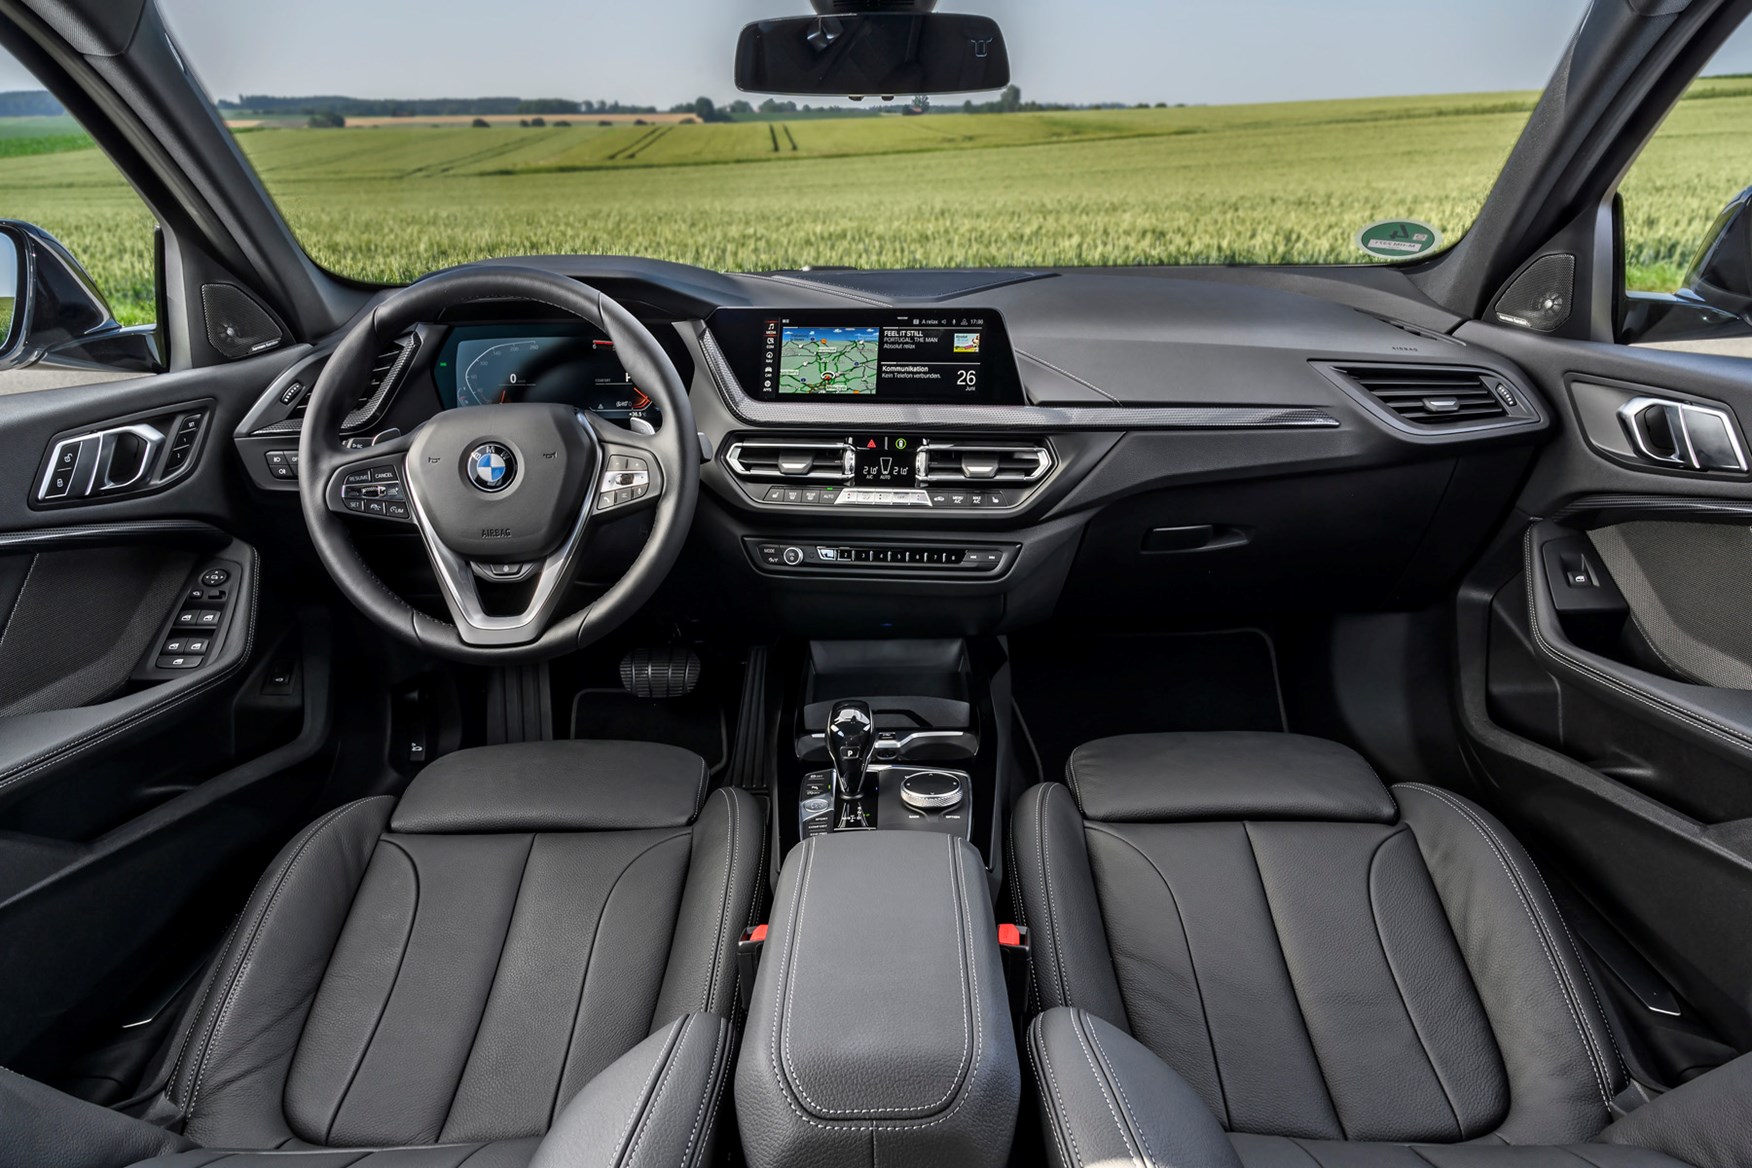 BMW 1-Series (2021) Interior Layout, Dashboard ...